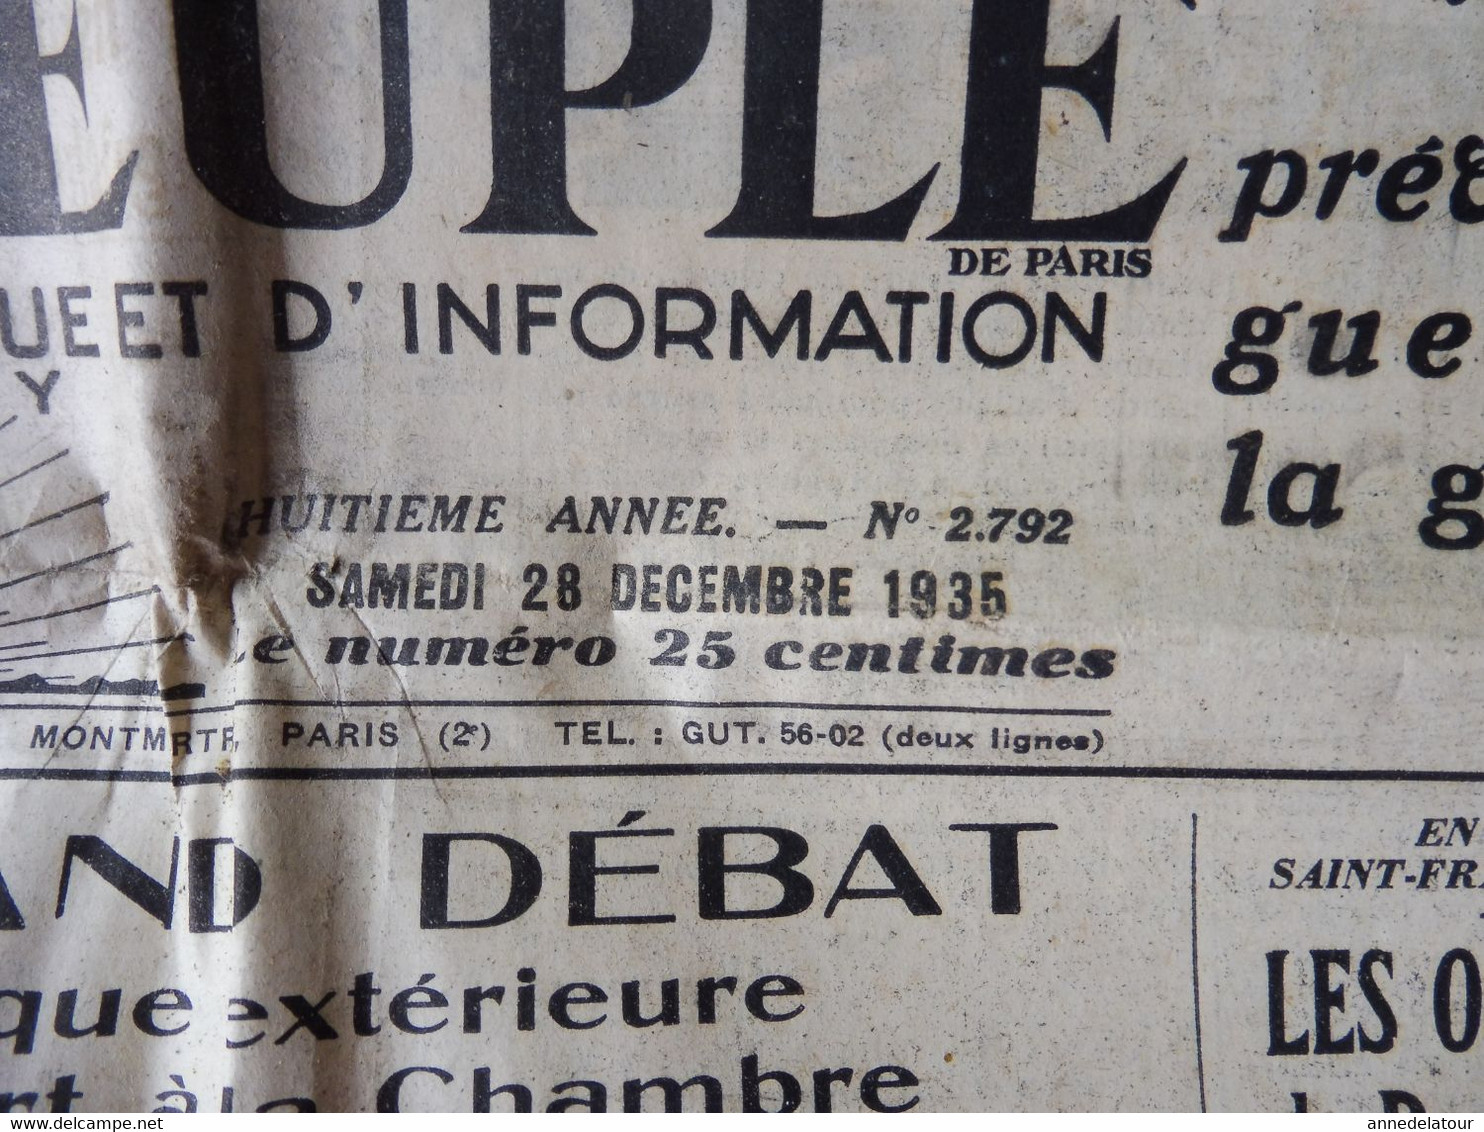 1935 L'AMI DU PEUPLE: Exposition Gustave Courbet à Zurich ;Réaction Populaire En Chine Contre L'expansion Japonaise; Etc - Informations Générales